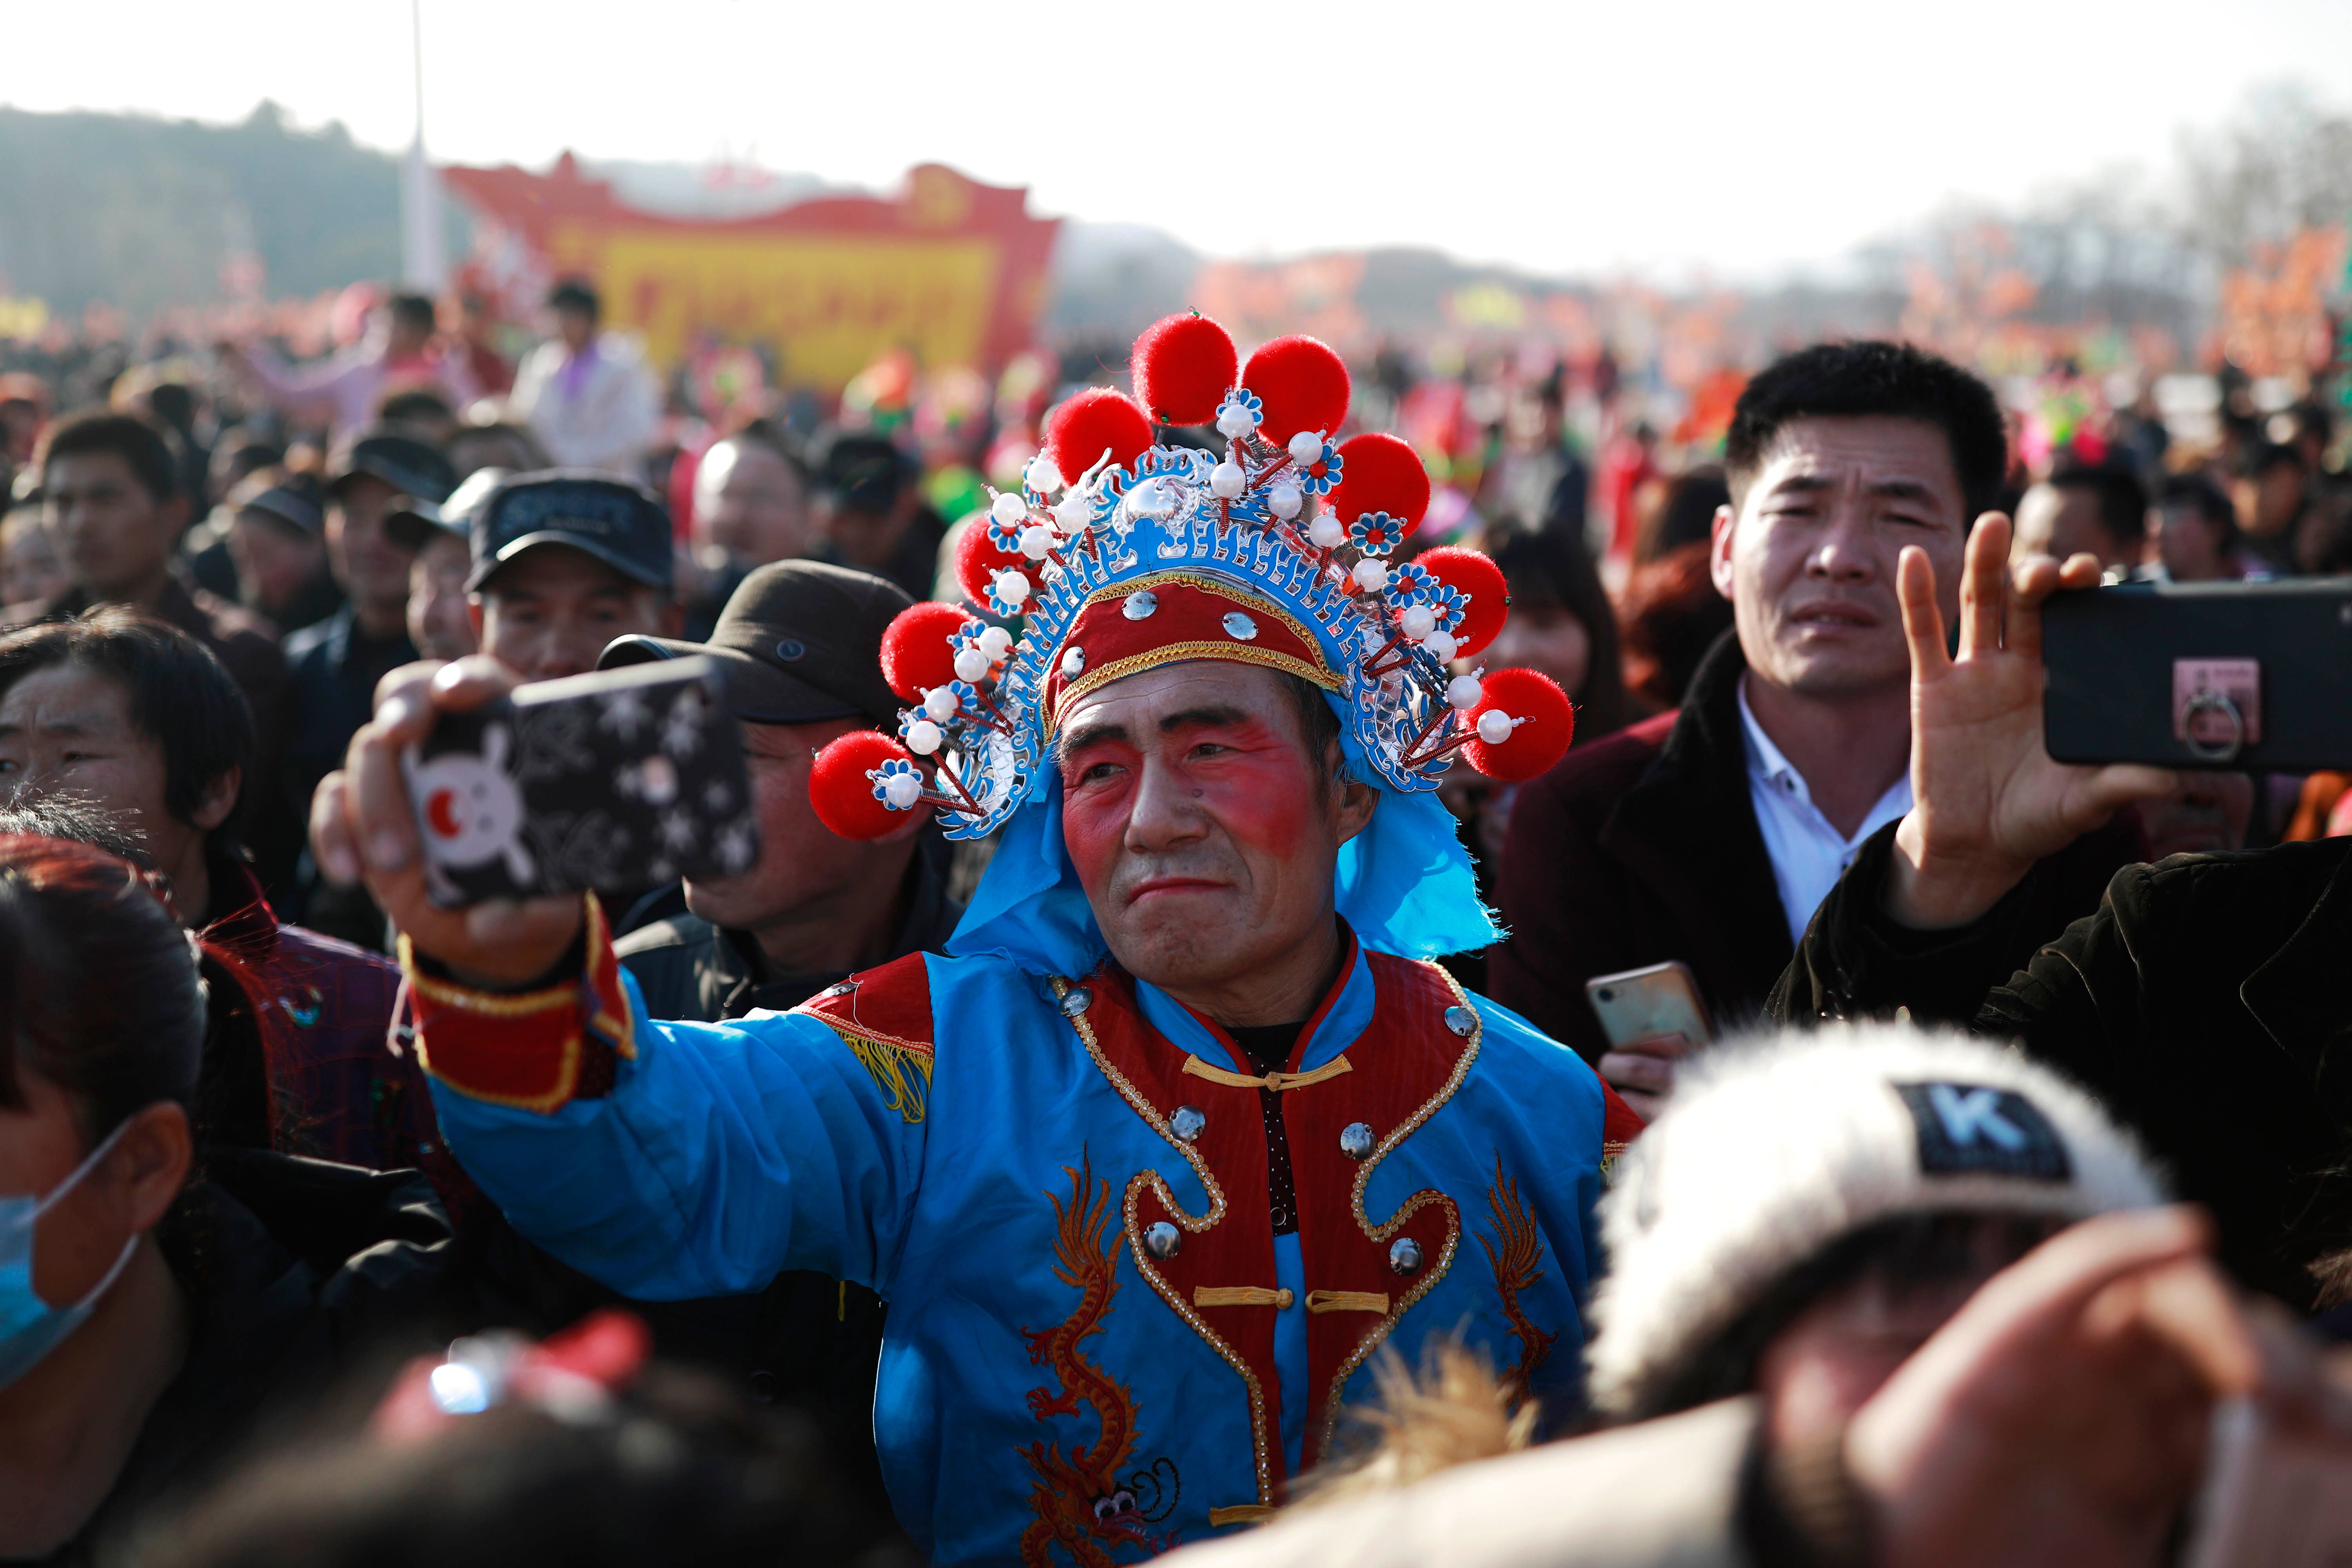 رجل صينى يرتدى ازياء مميزة للمشاركة فى المهرجان